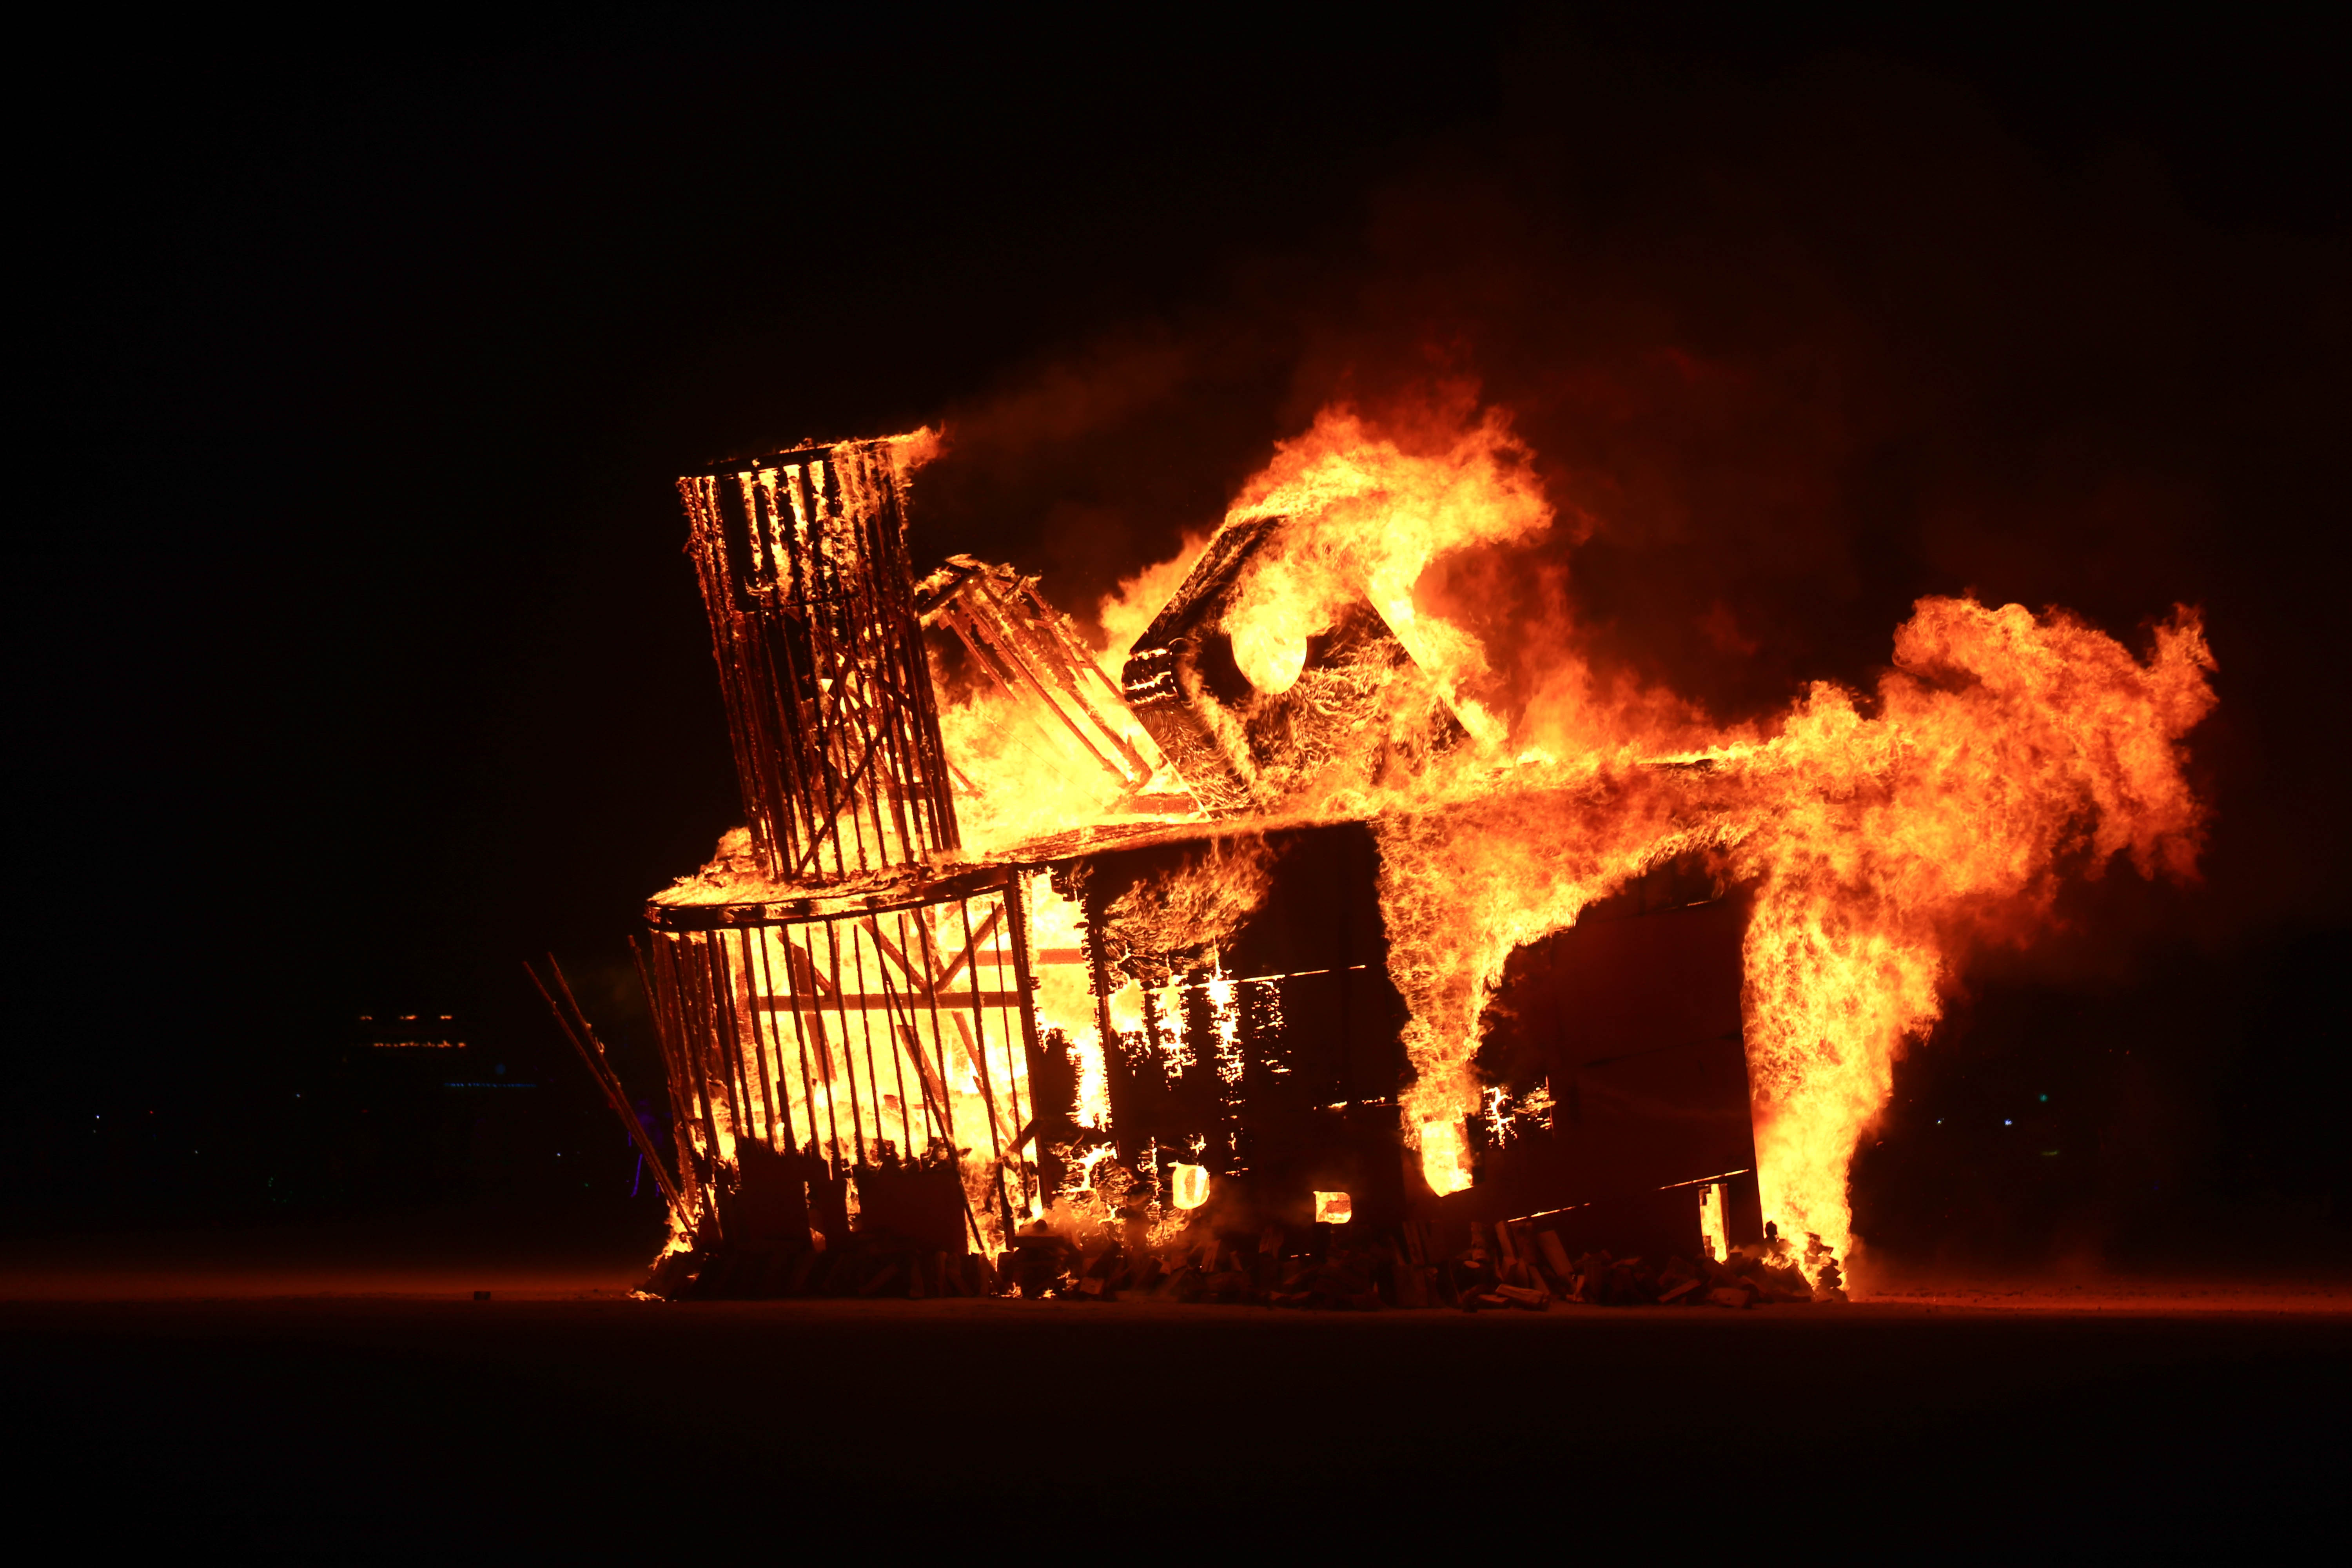 The Burning Man burn